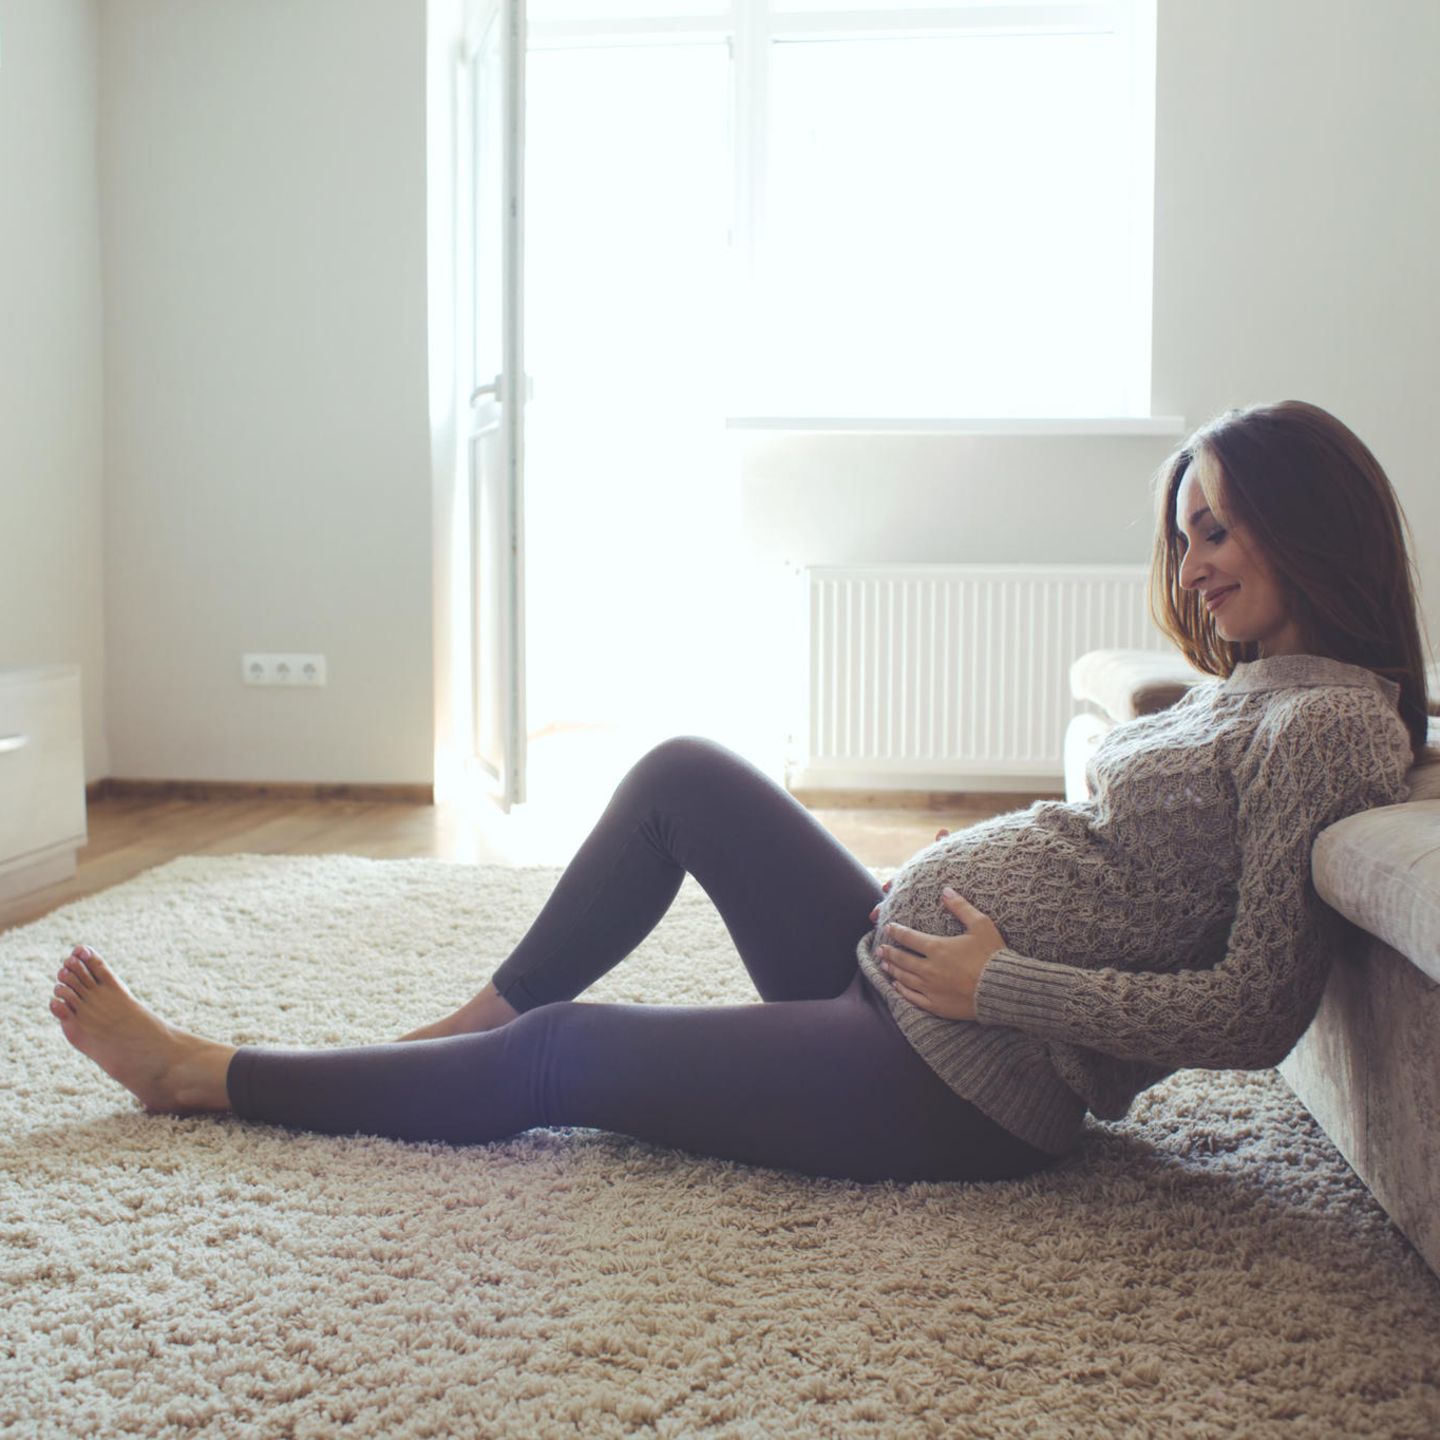 Weg mit den Schuldgefühlen!: Schwangere ruht sich in Wohnzimmer aus